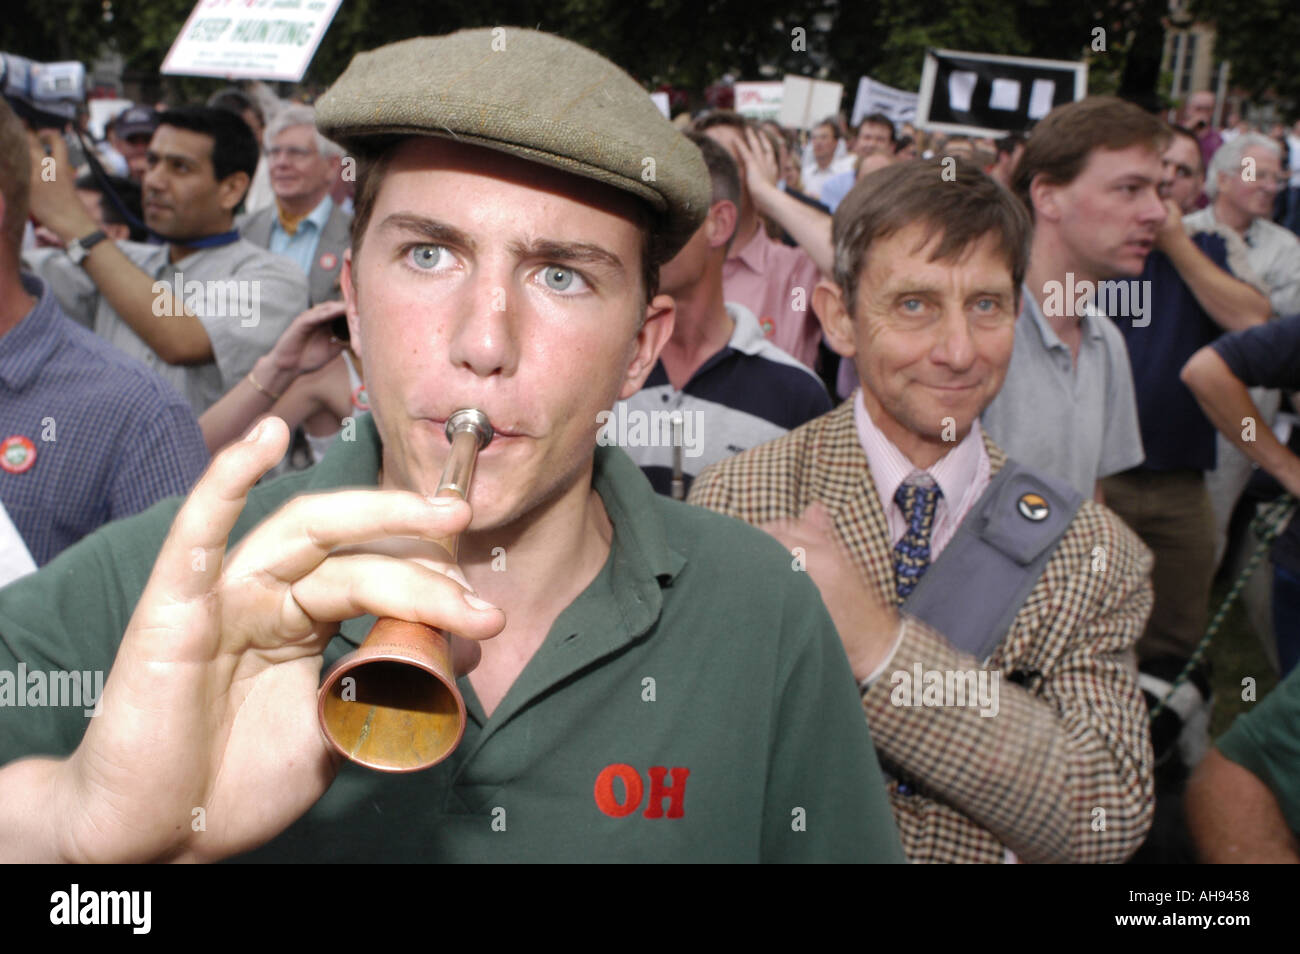 Pro Jagd Demonstranten verschaffen sich Gehör außerhalb des Parlaments in London 9. Juli 2003 Stockfoto